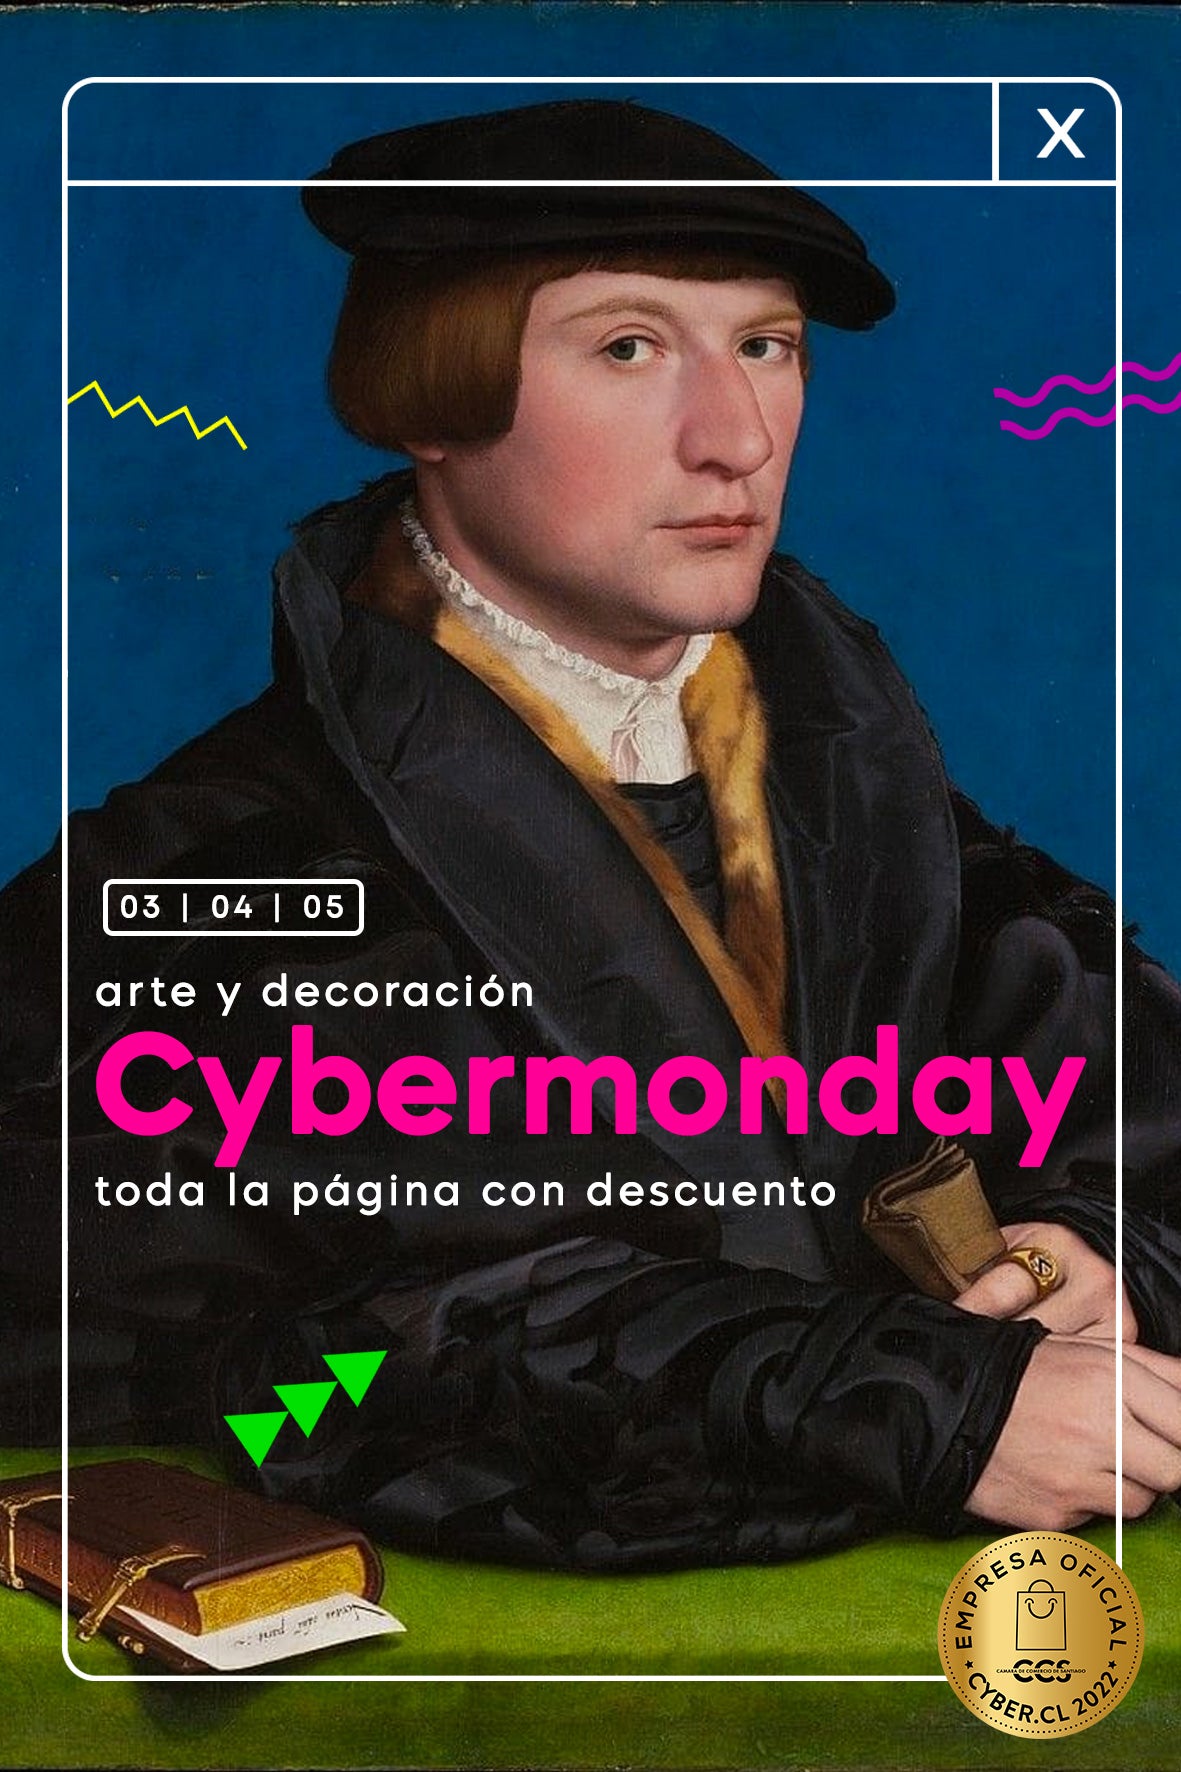 ¡Se viene un nuevo Cyber Monday!